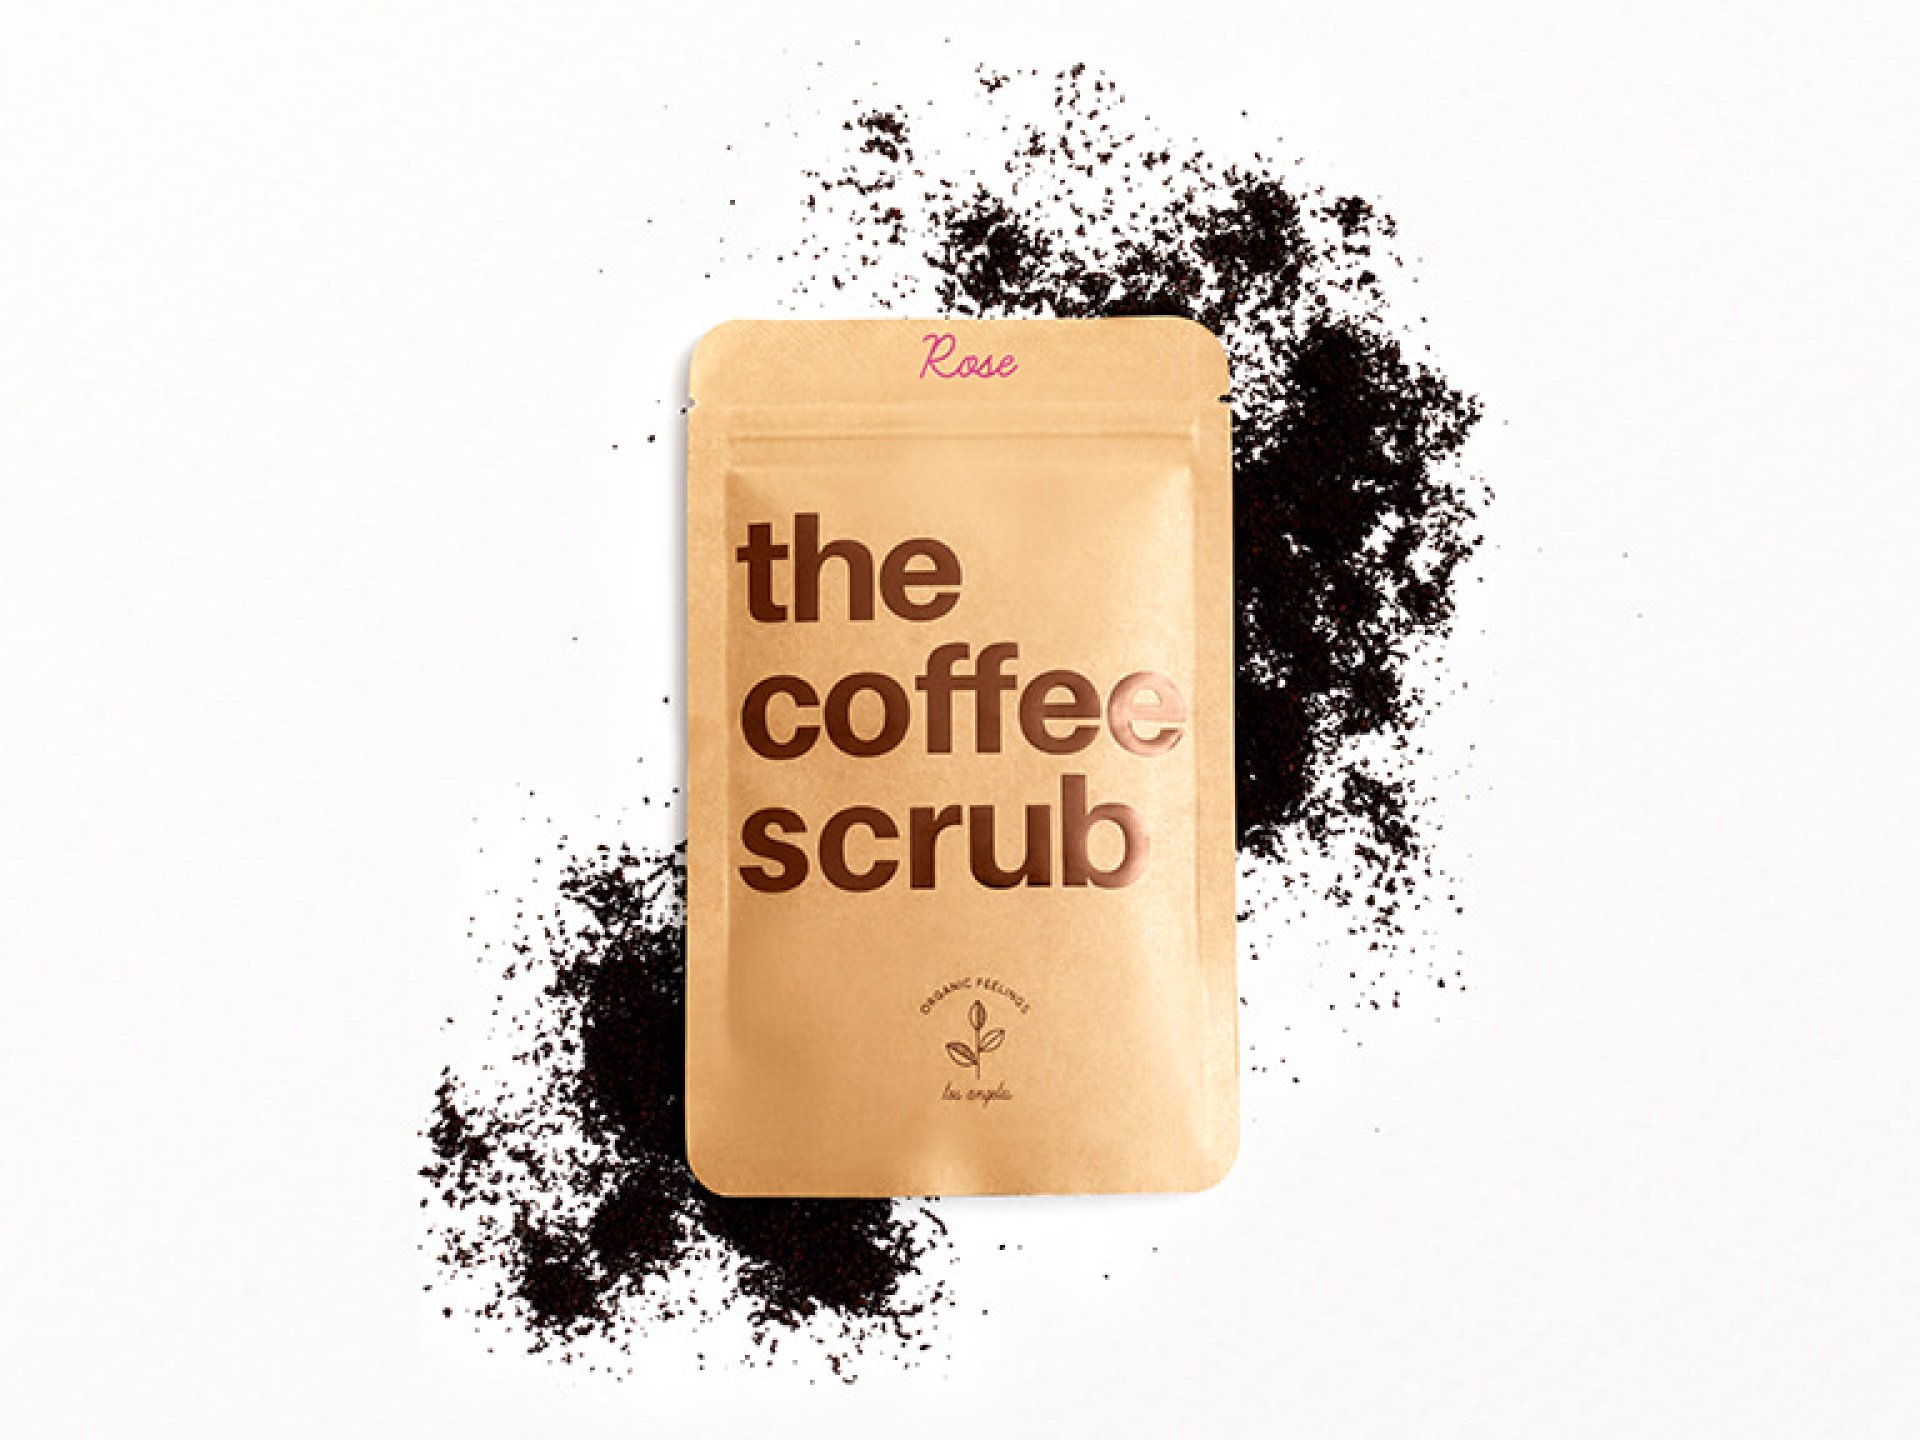 THE COFFEE SCRUB The Coffee Scrub in Rose